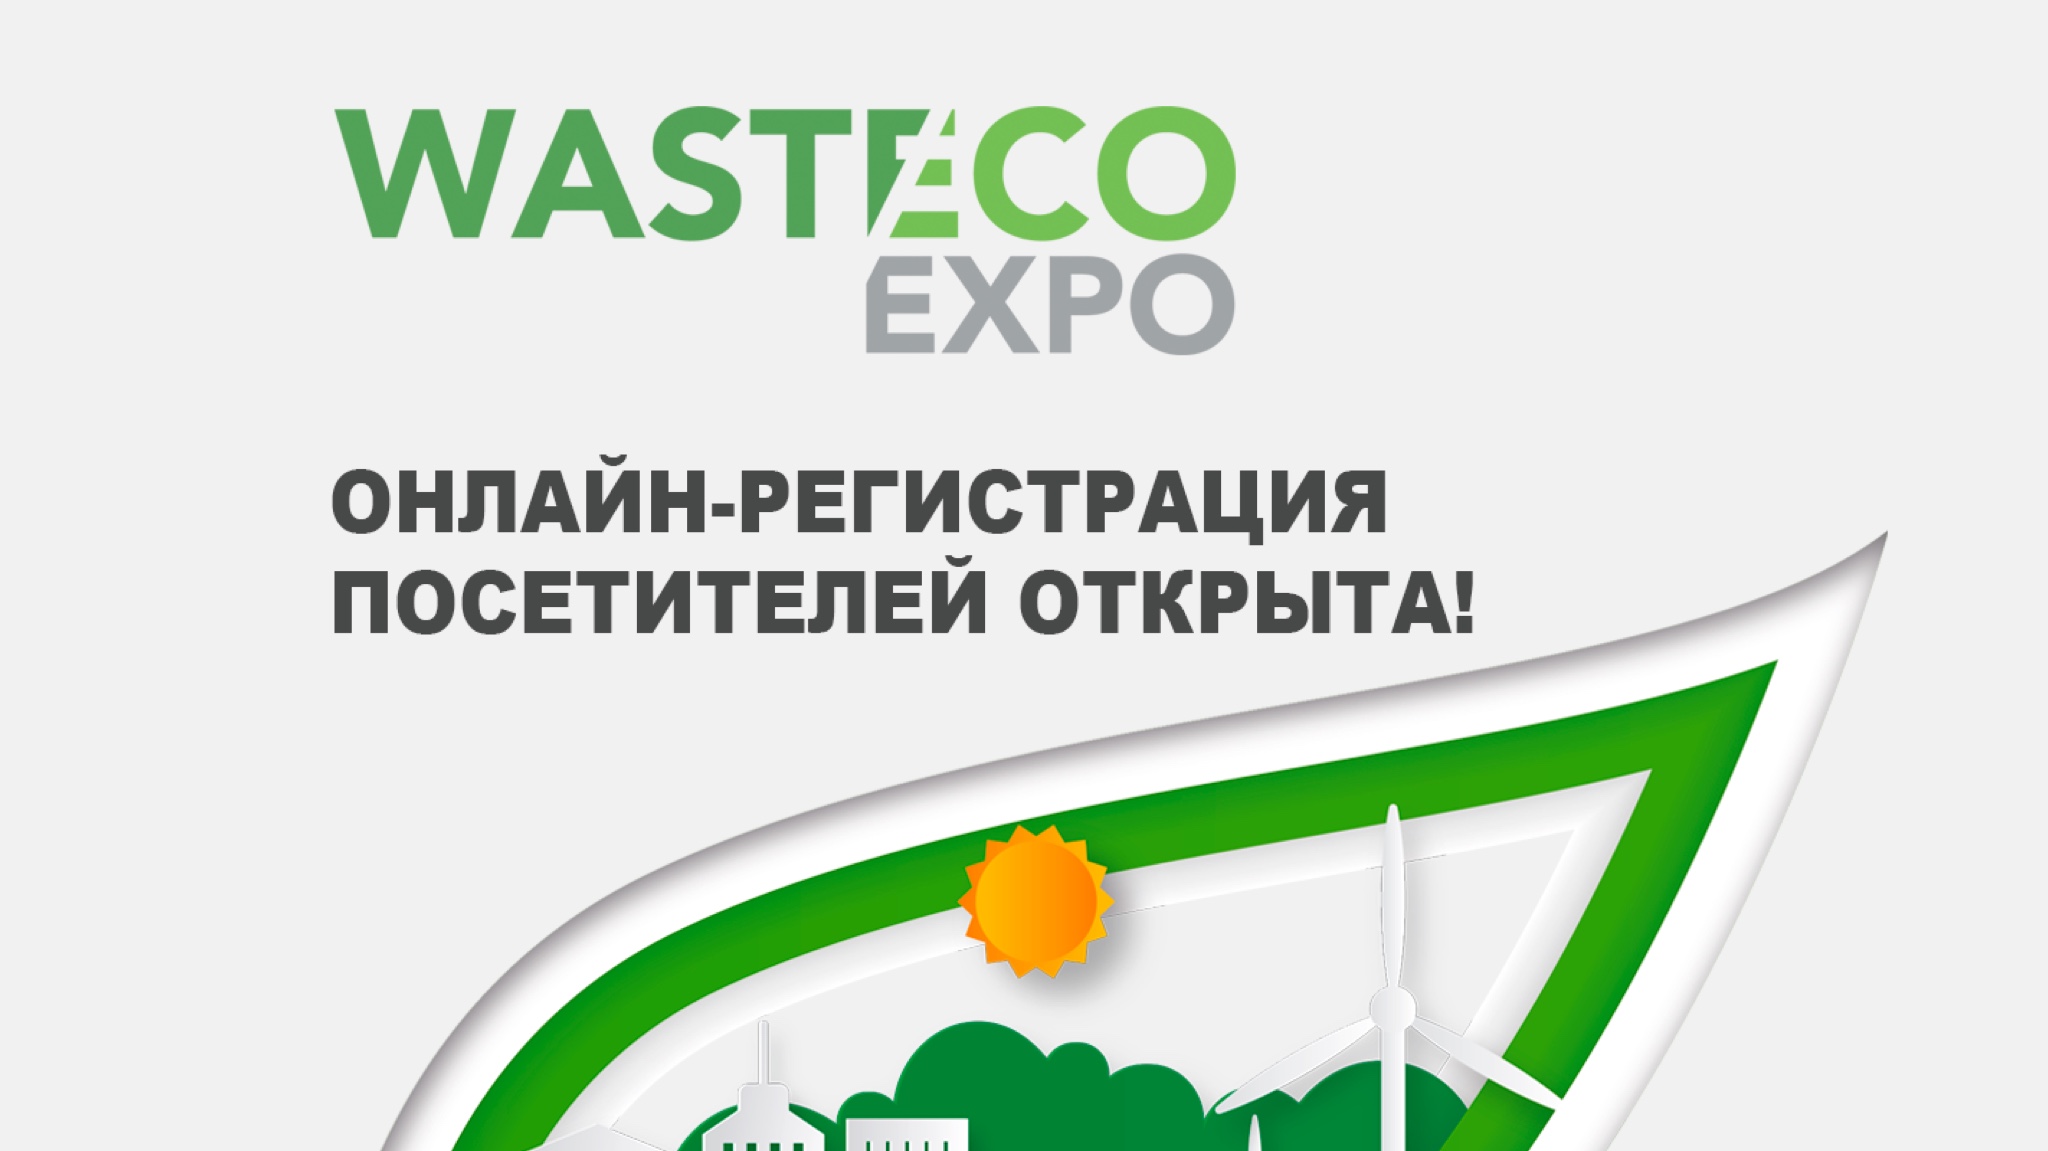 Международная выставка Waste Eco EXPO по управлению отходами состоится в сентябре 